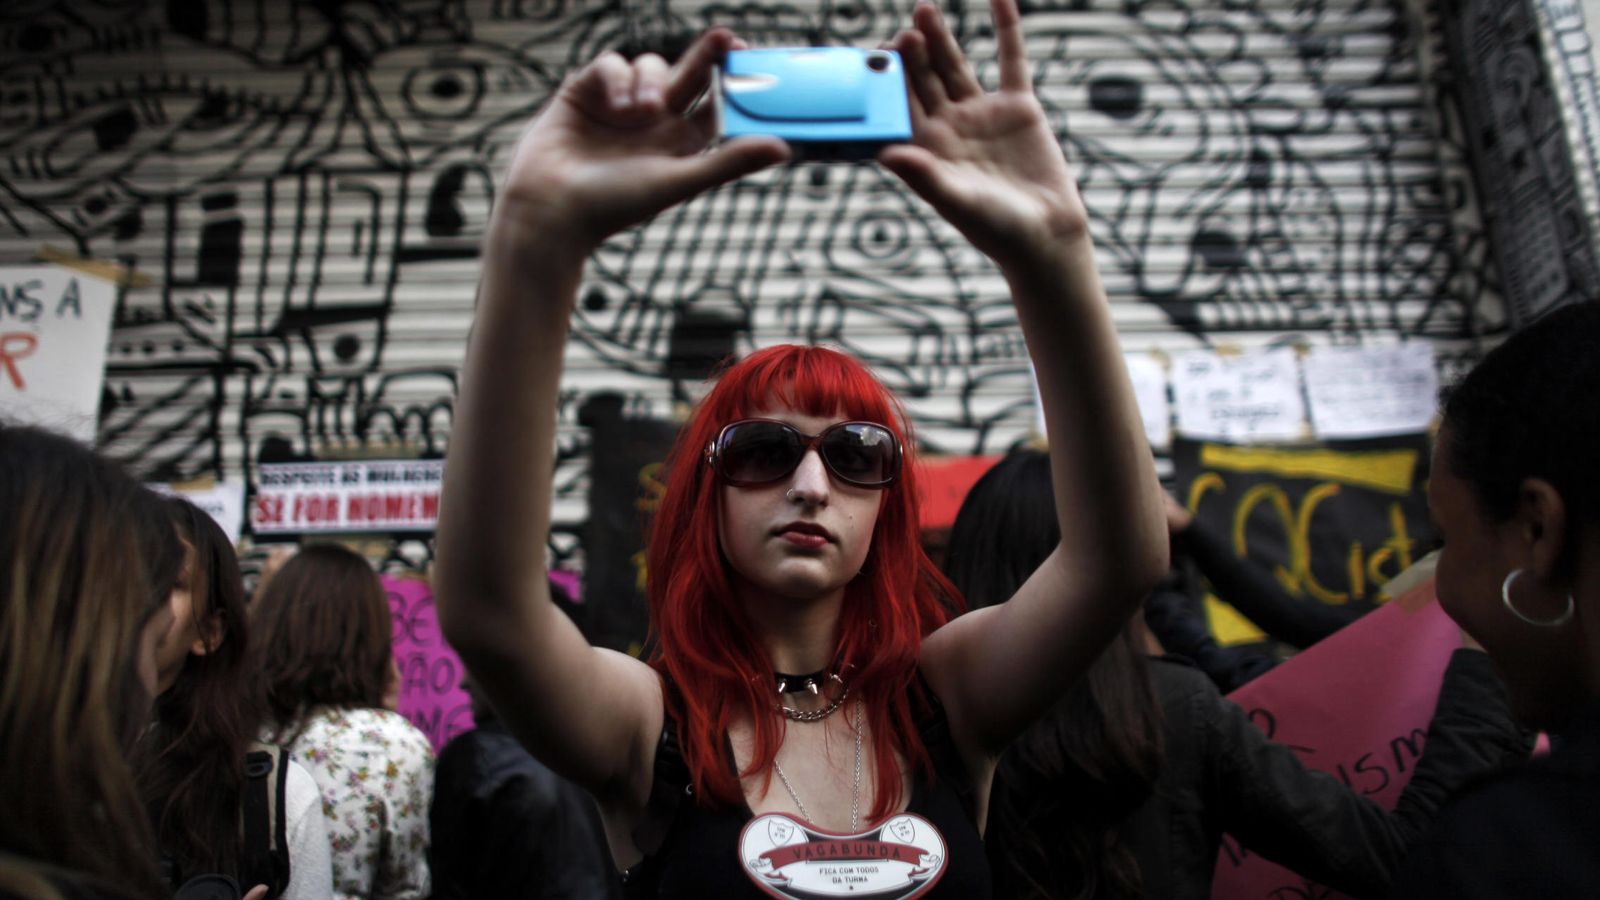 Foto: Una joven brasileña durante la Marcha de las Vagabundas en Sao Paulo, una protesta contra los crímenes sexuales (Reuters).   